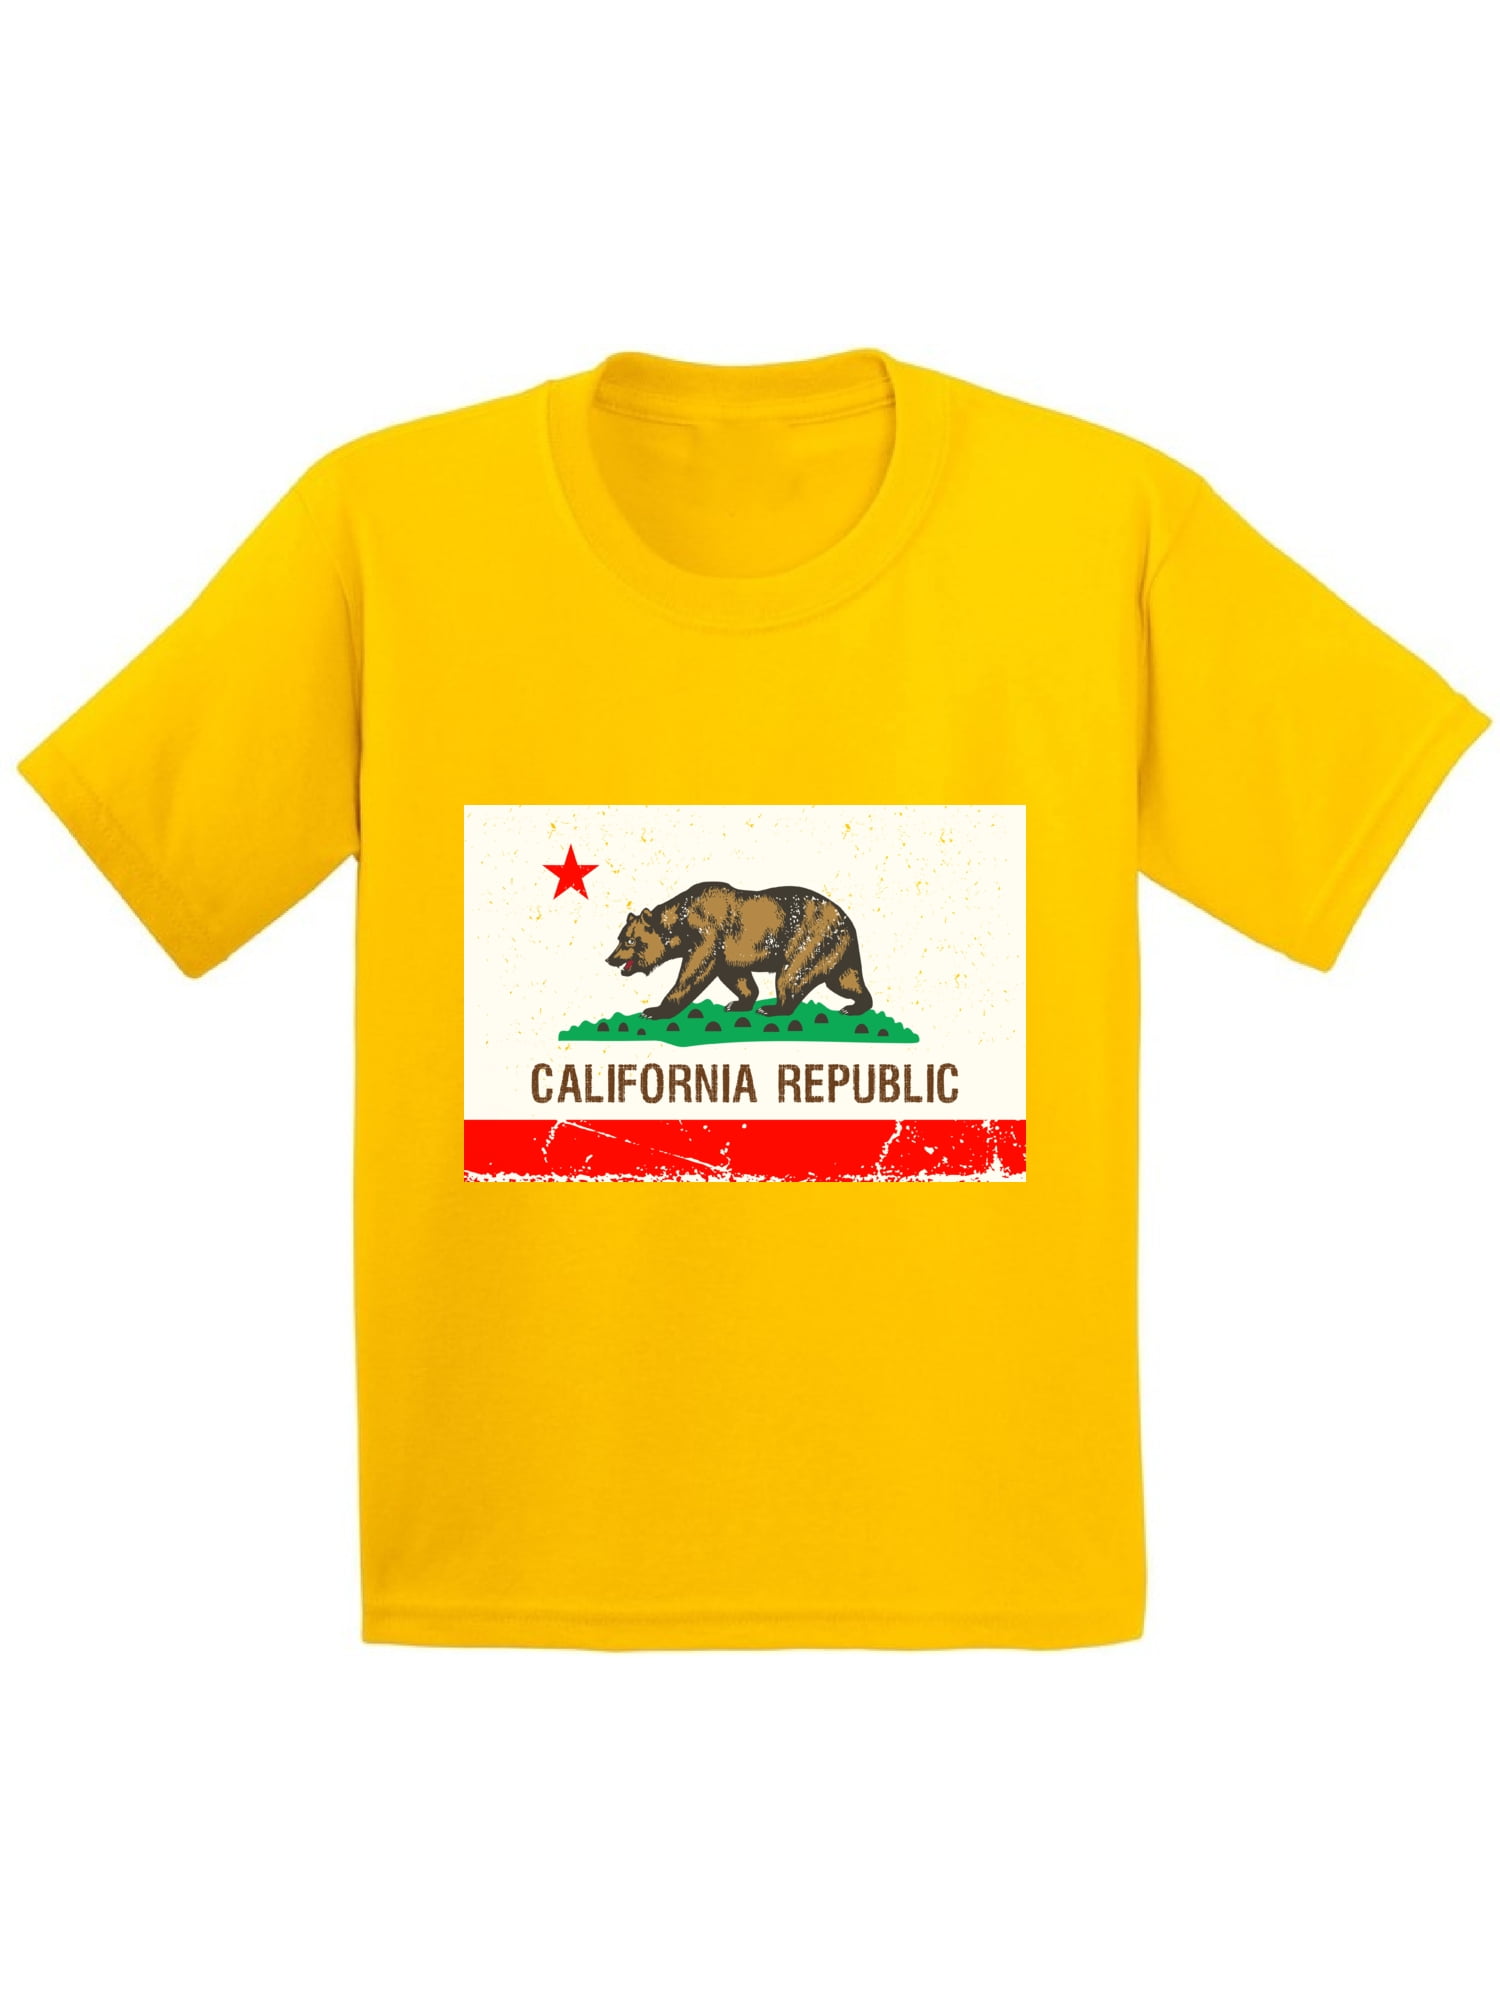 California Replublic Muscle Car Kids T-Shirt 